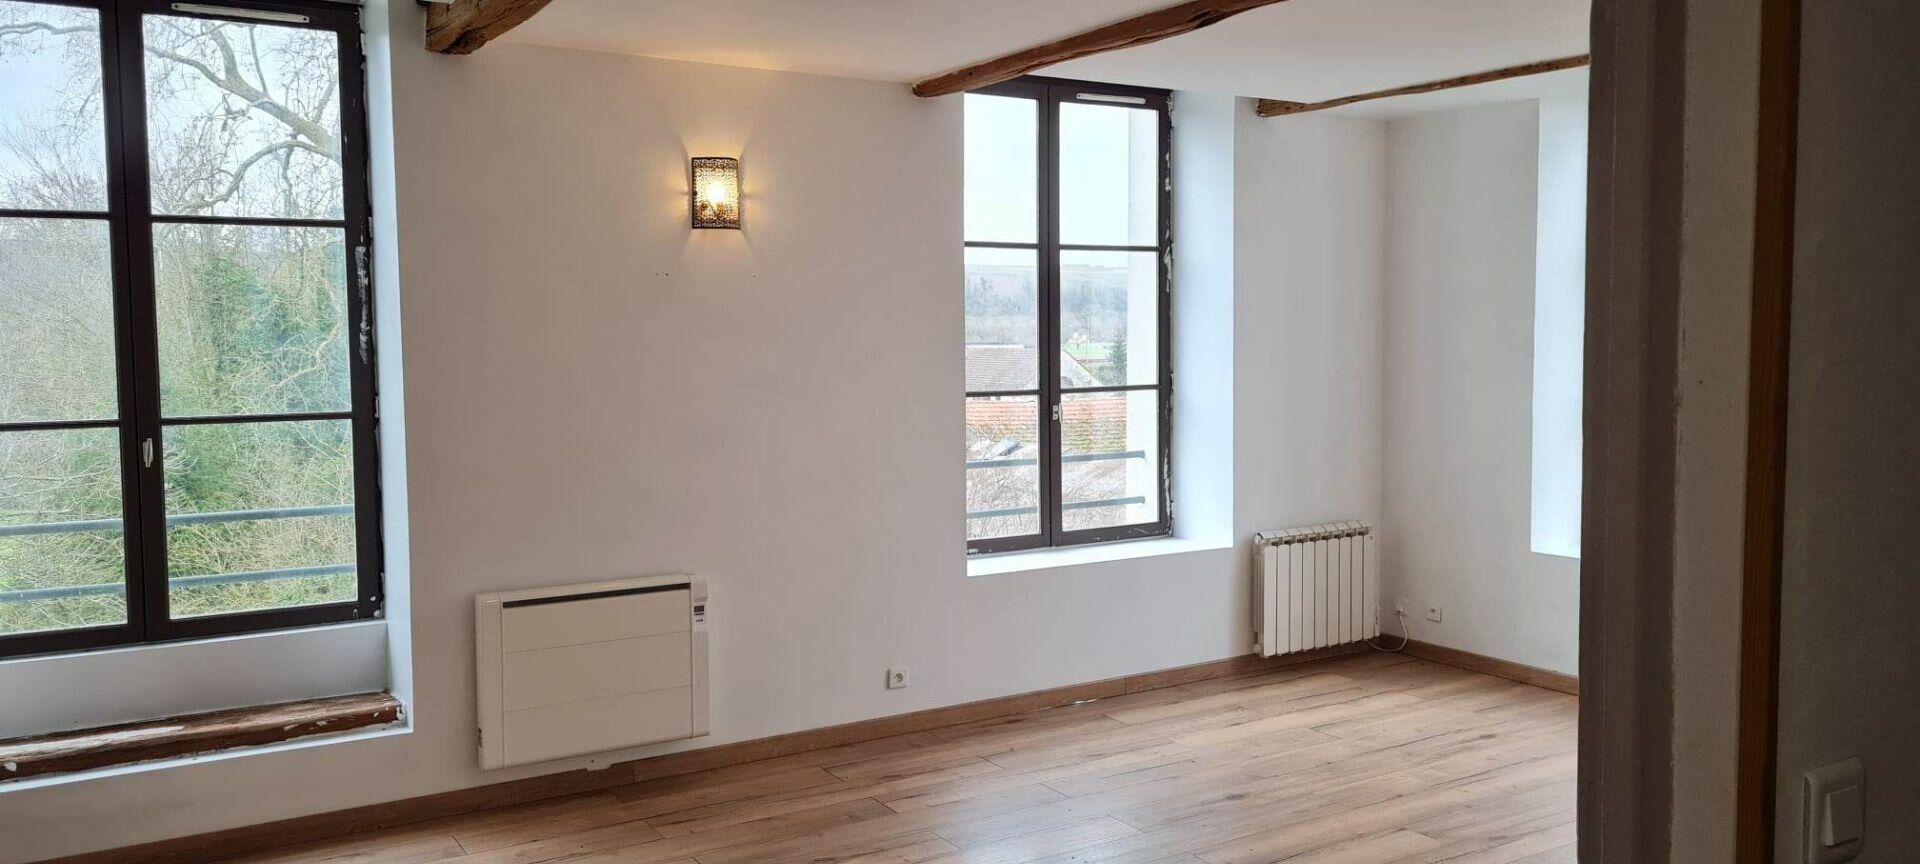 Appartement à vendre 2 90m2 à Saâcy-sur-Marne vignette-8